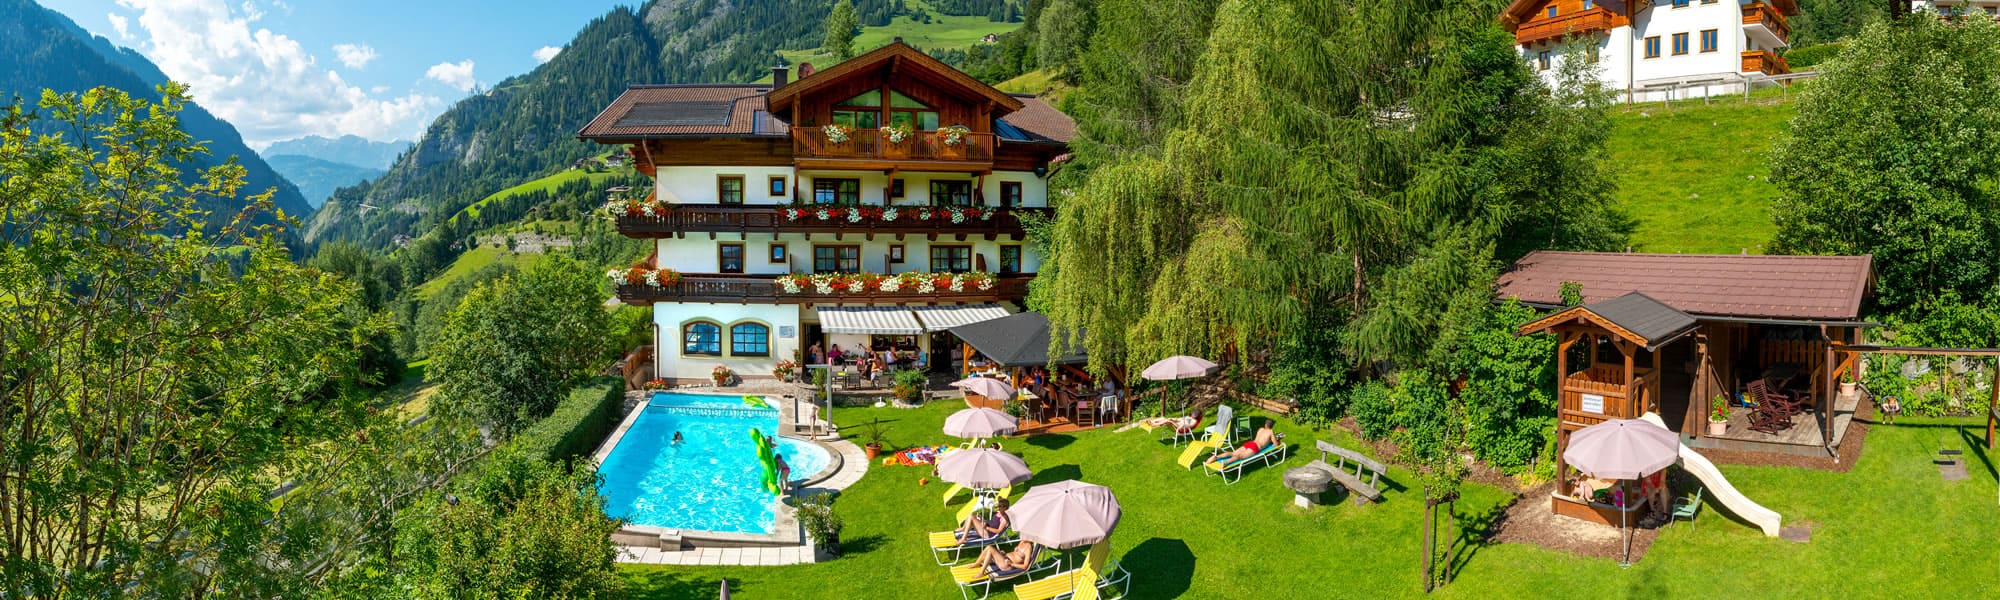 Hotel Dorfer mit Schwimmbad im Sommer